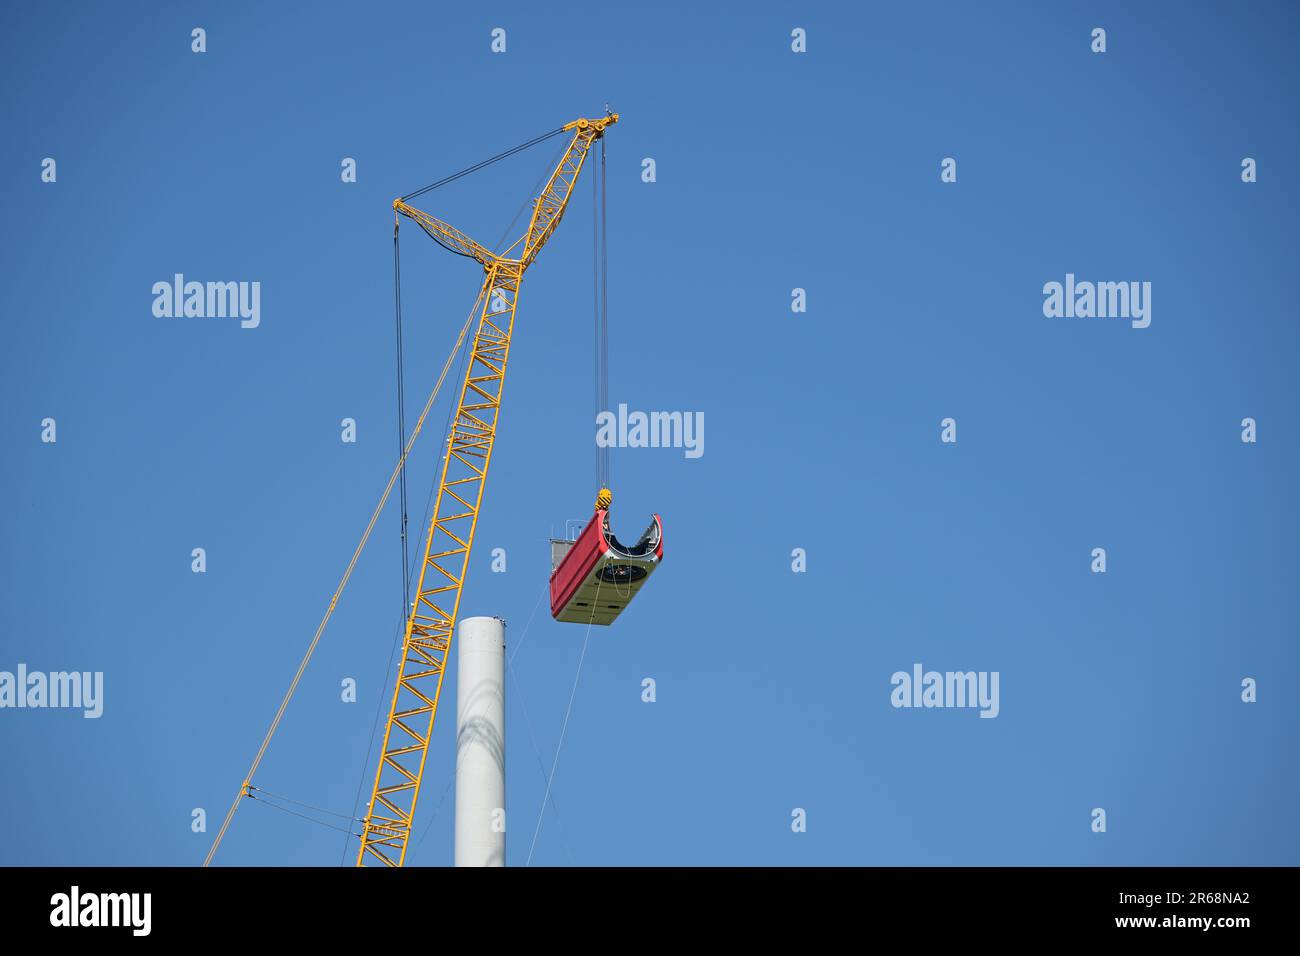 Gru che solleva la navicella per installarla sulla torre di una turbina eolica in cantiere, elettricità, energia rinnovabile ed energia elettrica, blu Foto Stock